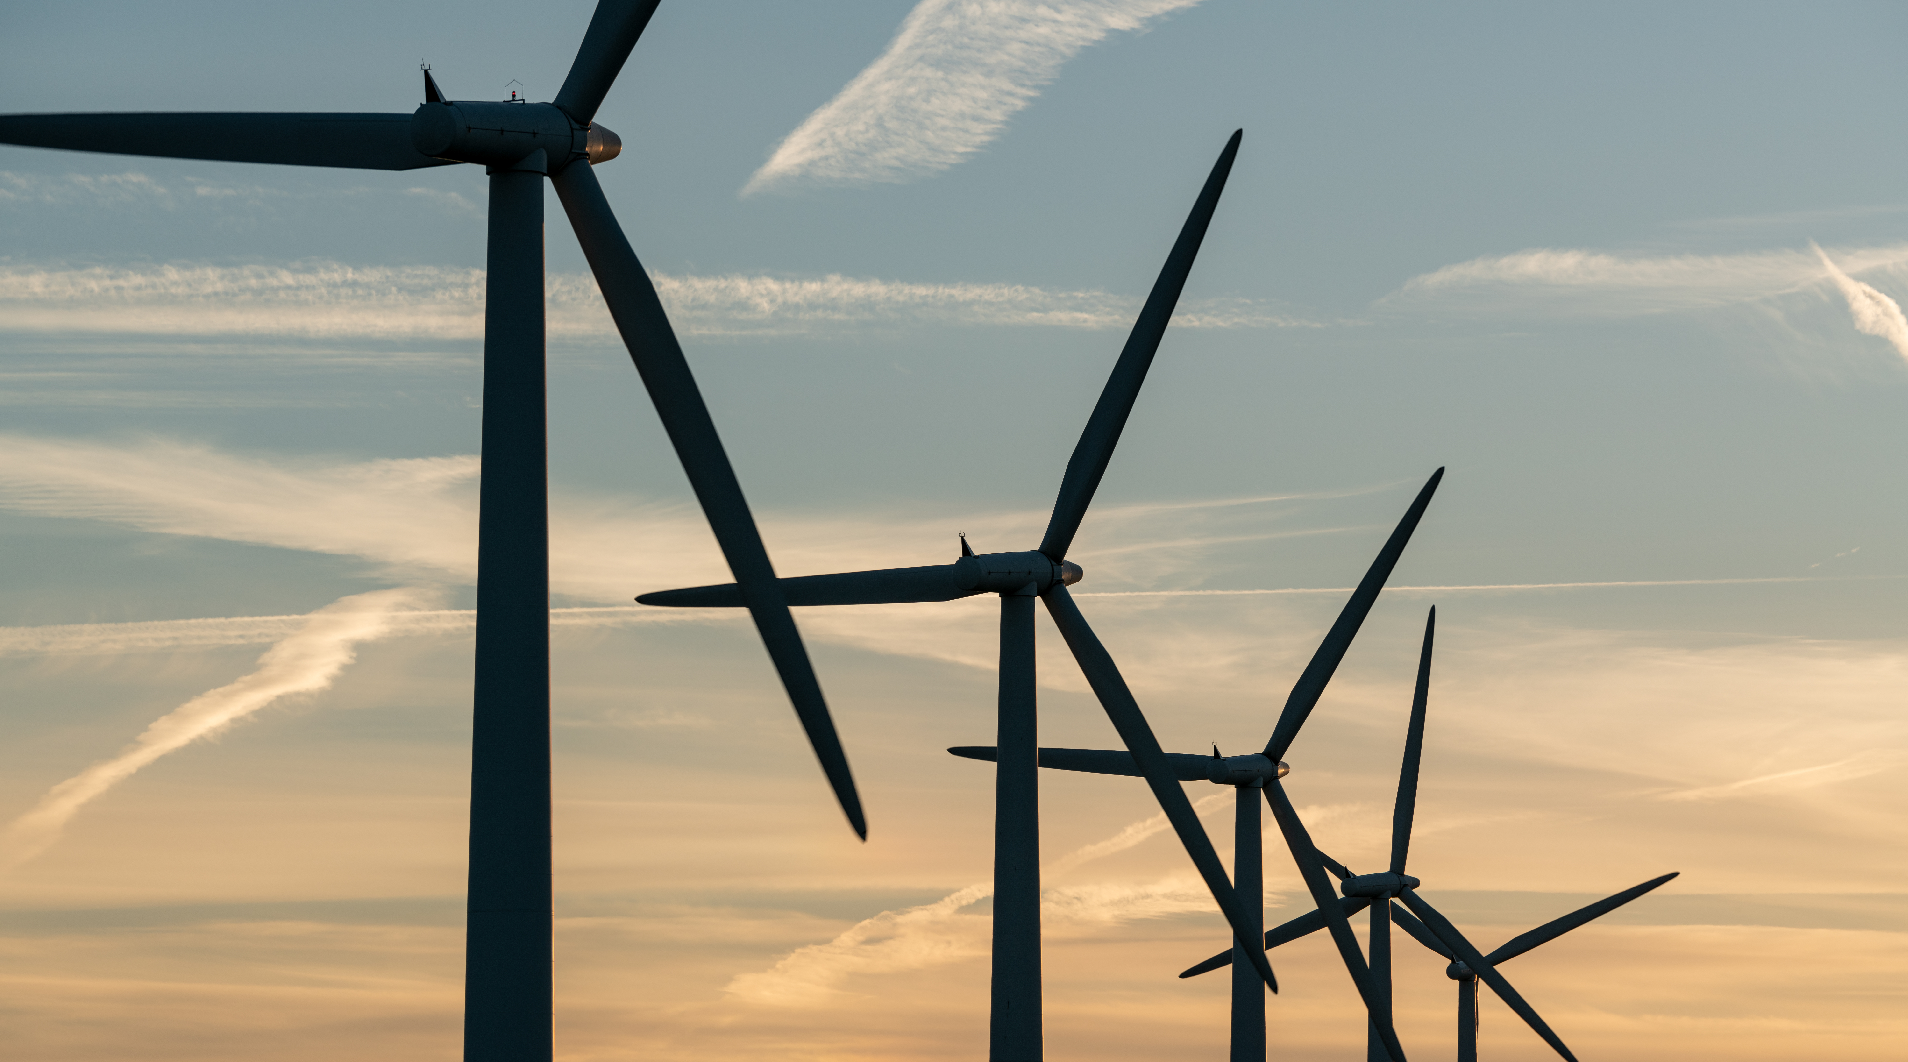 Le projet de parc éolien de la Haute-Chaudière verra le jour sur le territoire de la MRC du Granit  et permettra d'obtenir une puissance installée de 120 MW d'électricité de source éolienne. 